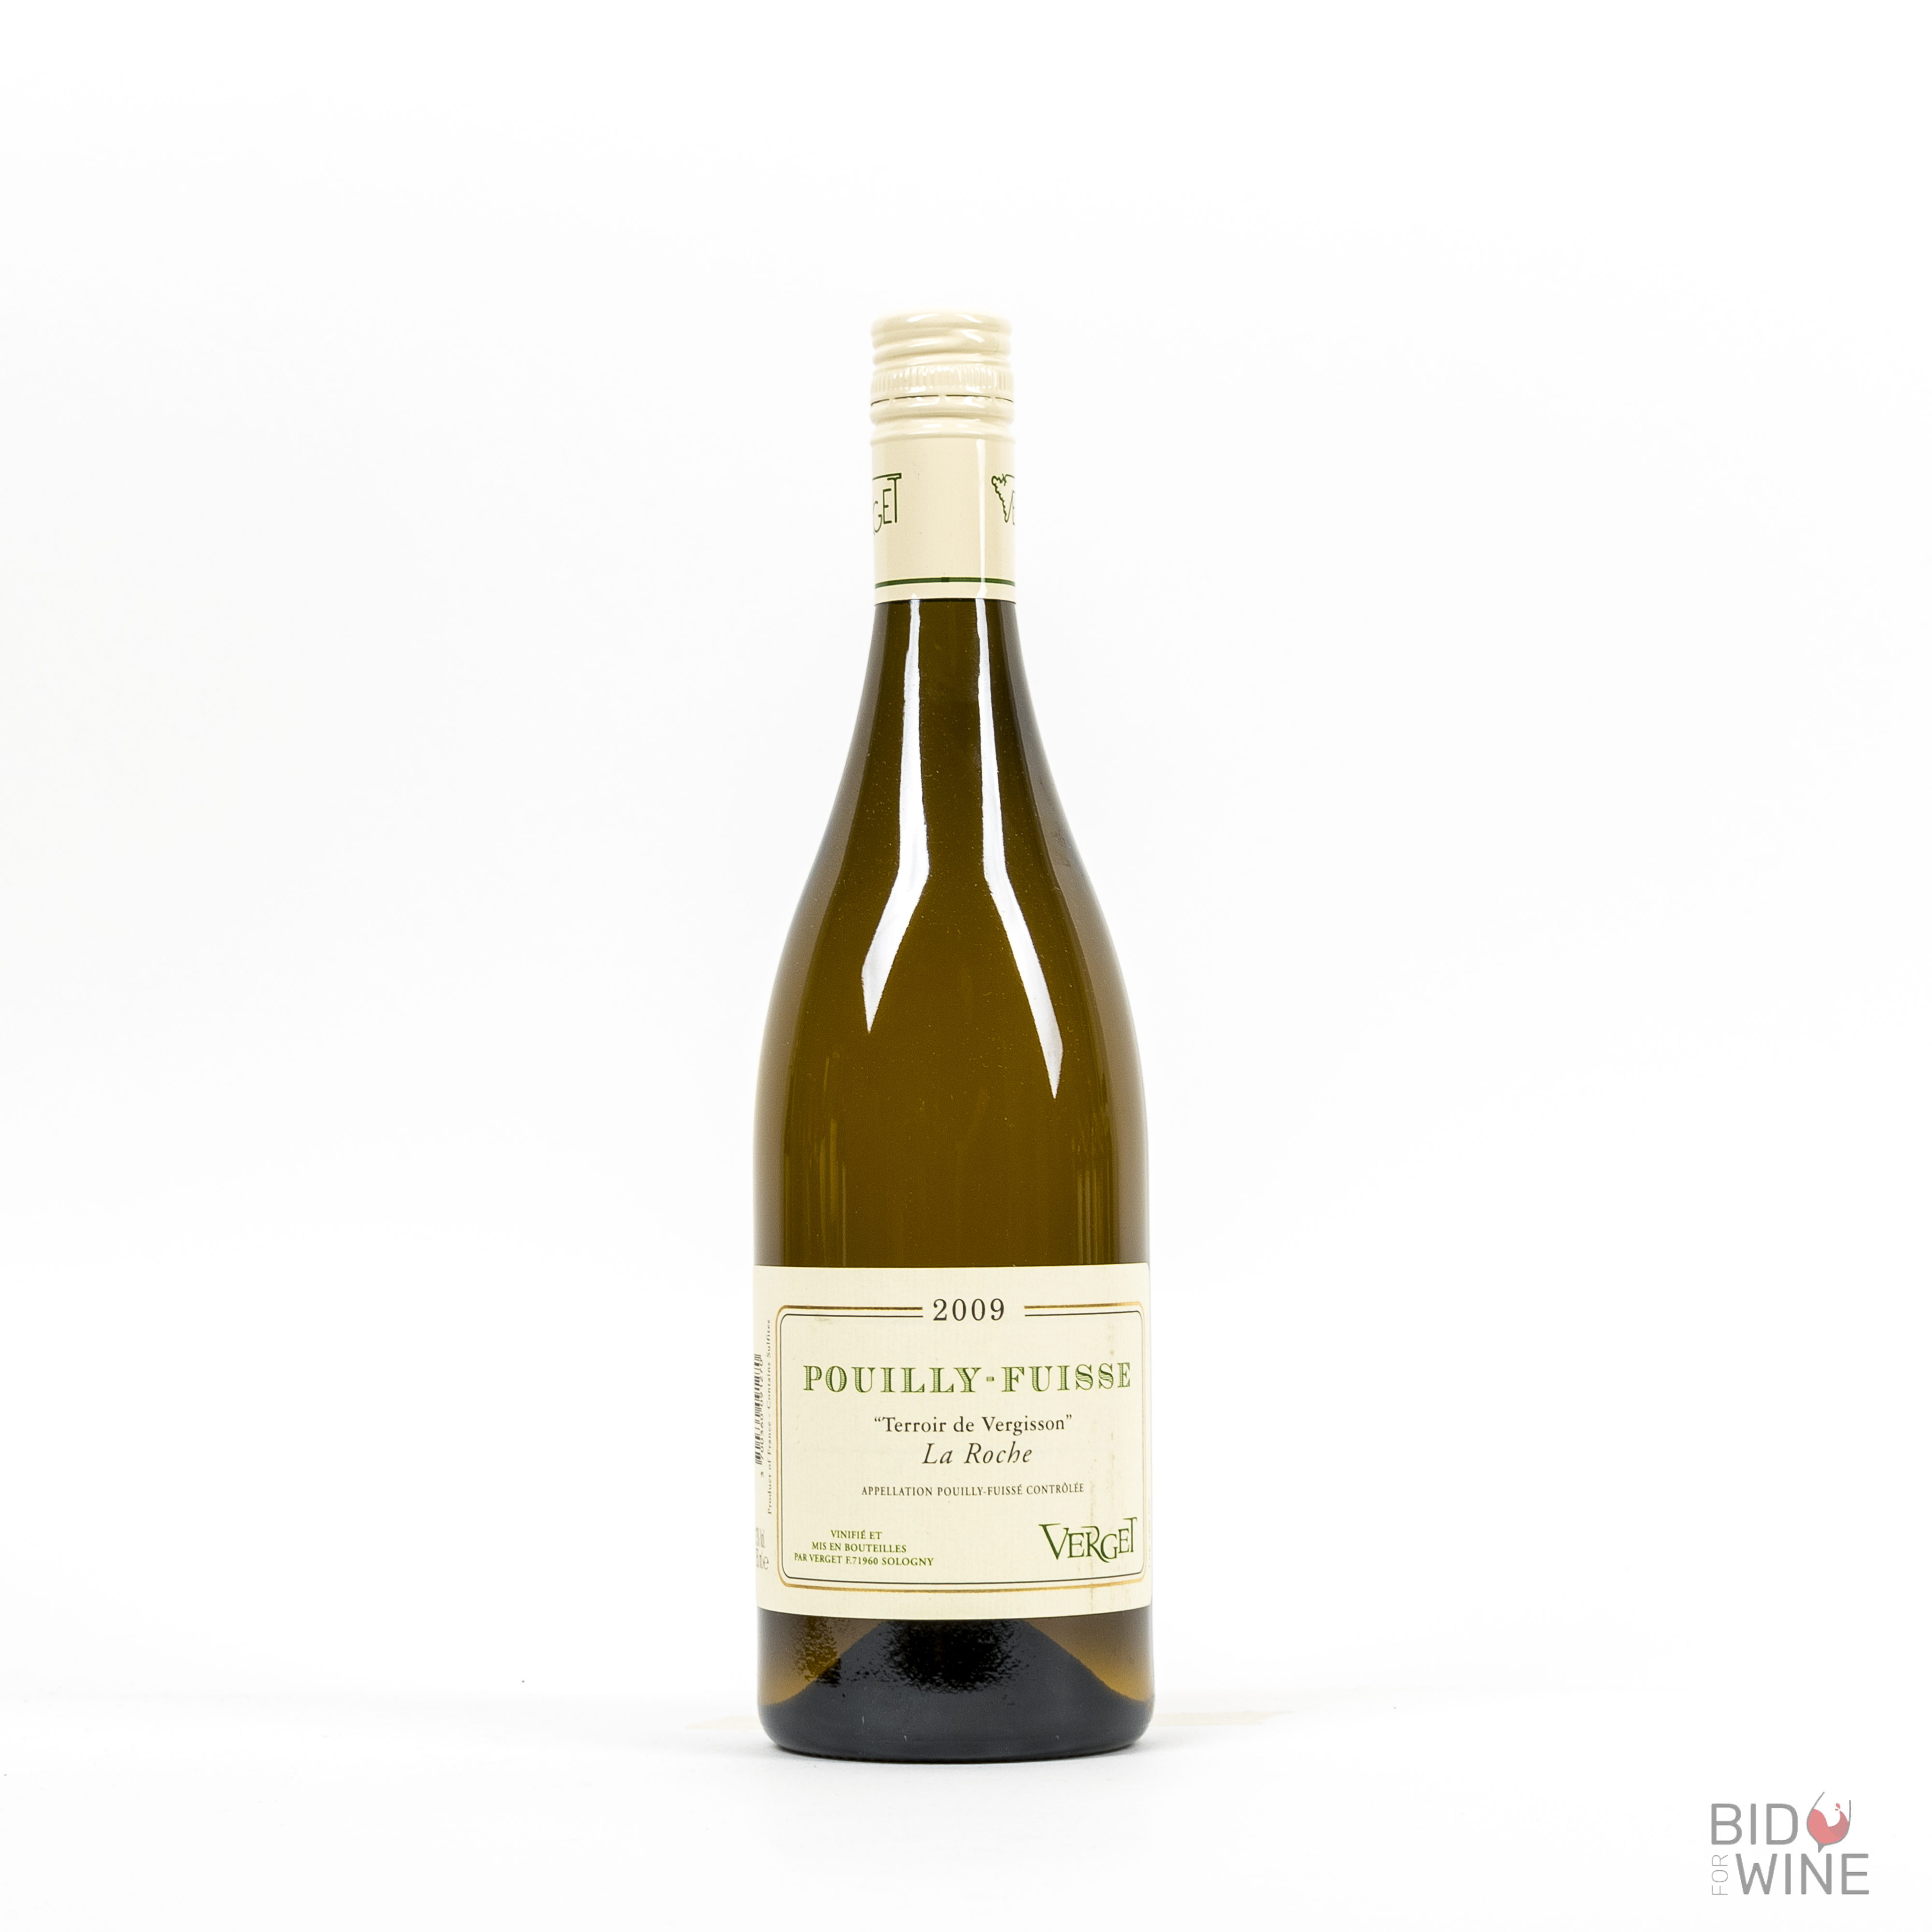 2009 Pouilly-Fuisse Terroir de Vergisson La Roche, Verget, 12 bottles of 75cl